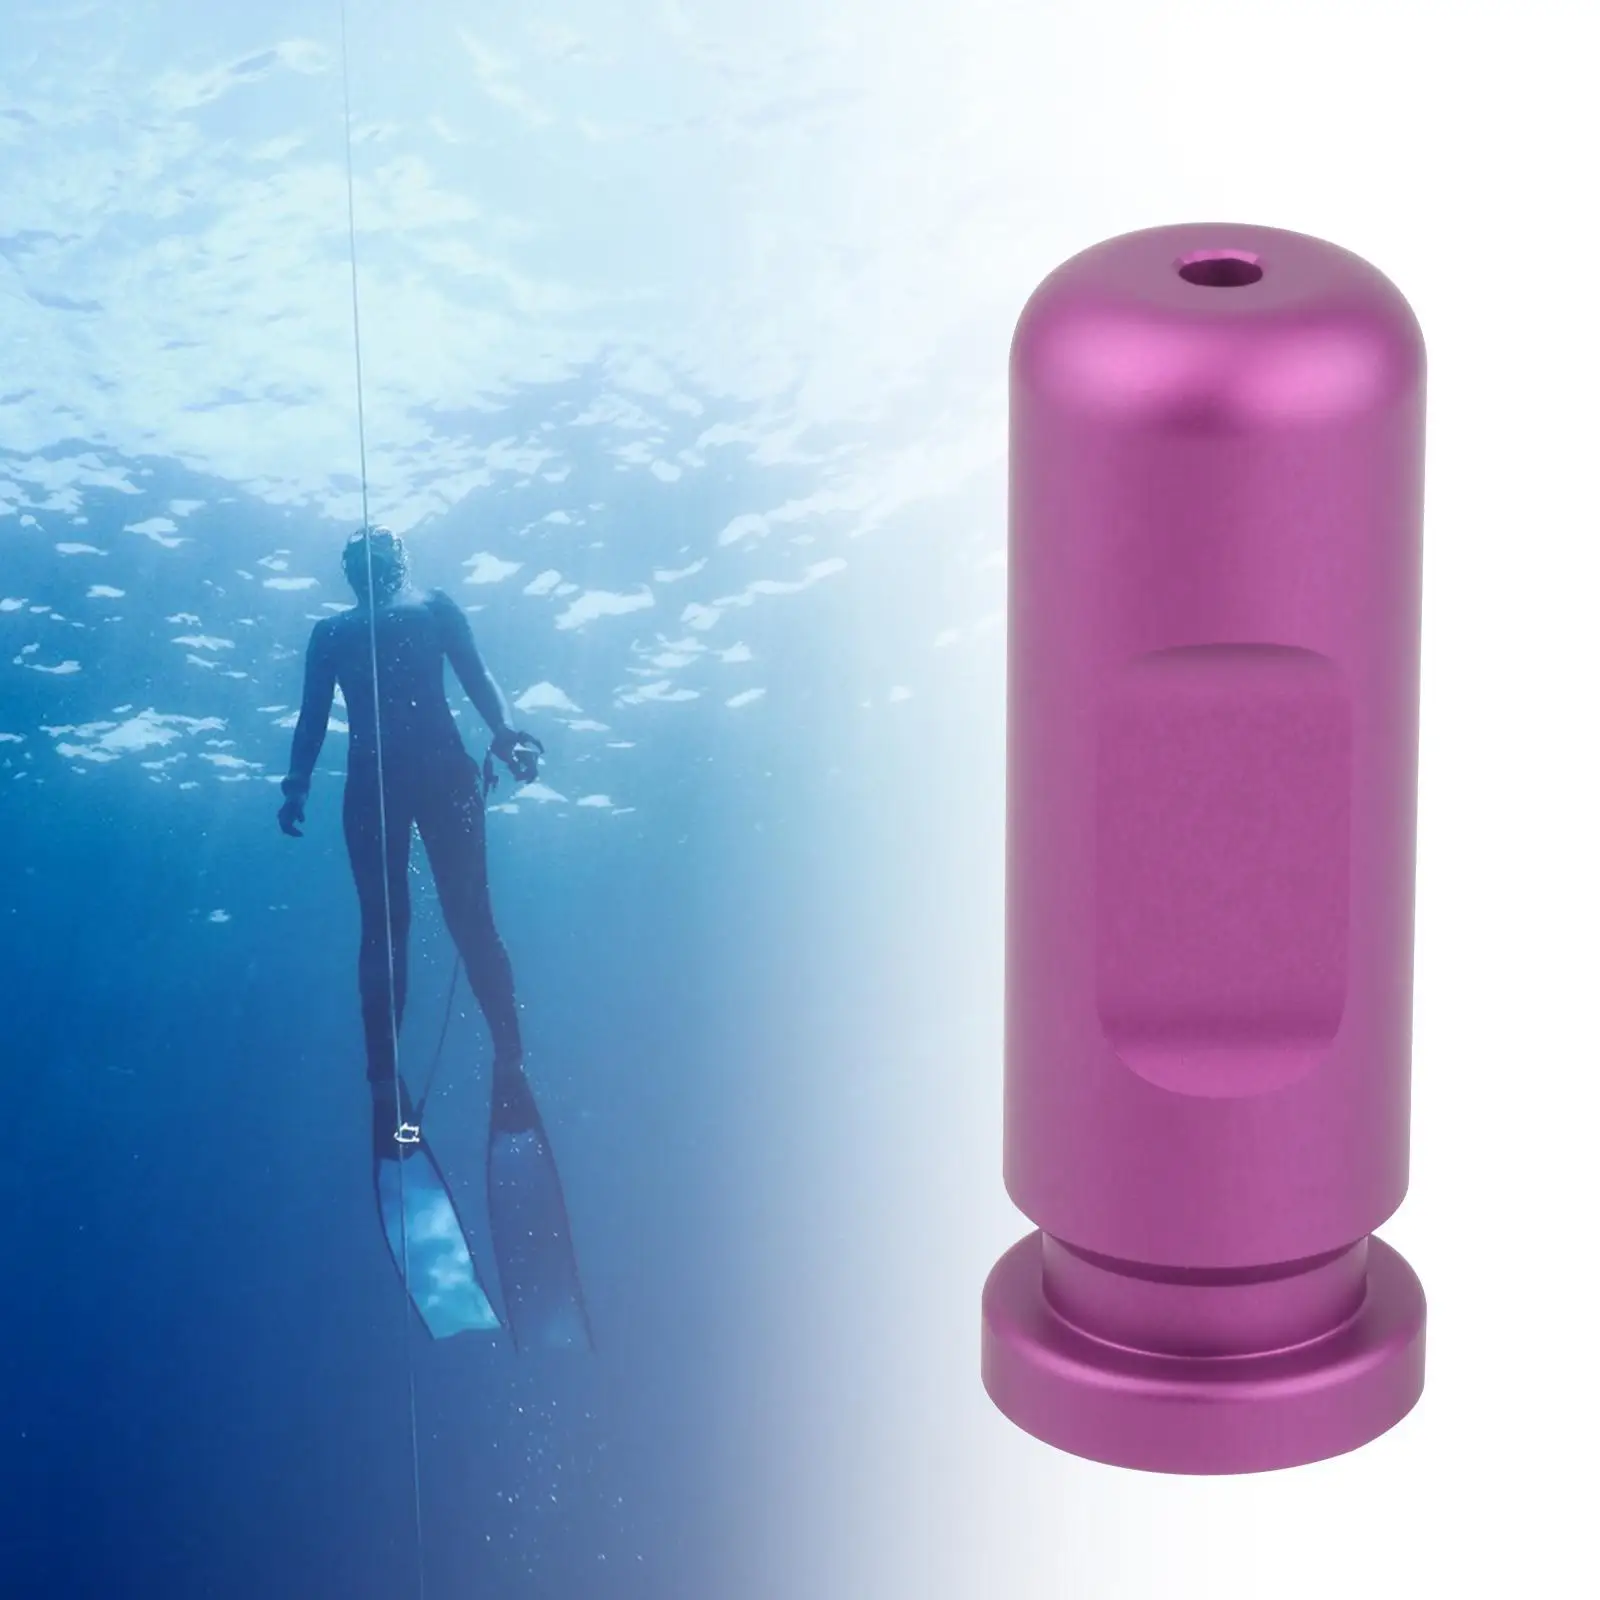 Freediving האוזן השוואת מאמן אימון כלי עזר תרגול כלי צלילה צלילה צלילה למתחילים - 5